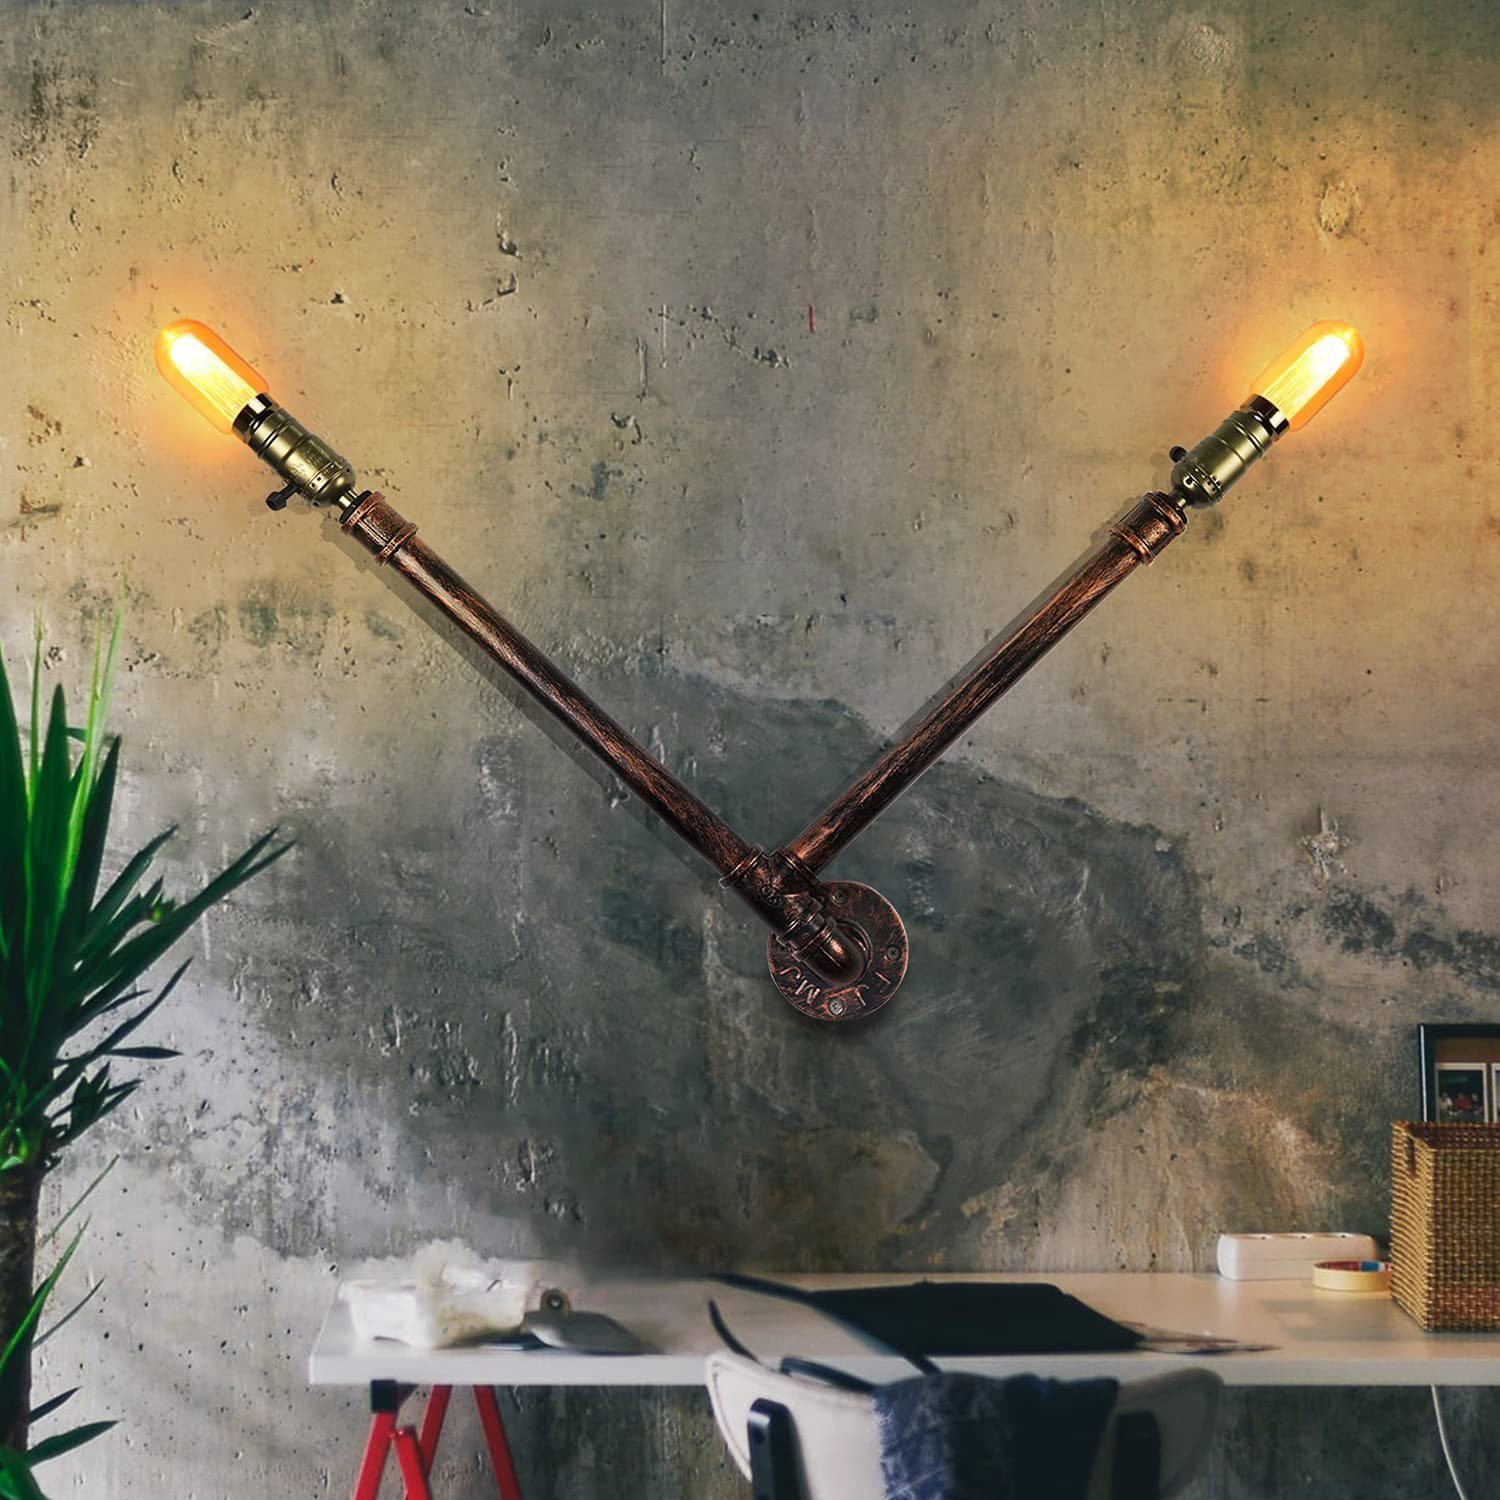 Wandleuchte Deko-Retro wechselbar, Wandlampe für Wand, Wandlampe LED Innen Vintage Lampe ZMH Wandleuchte